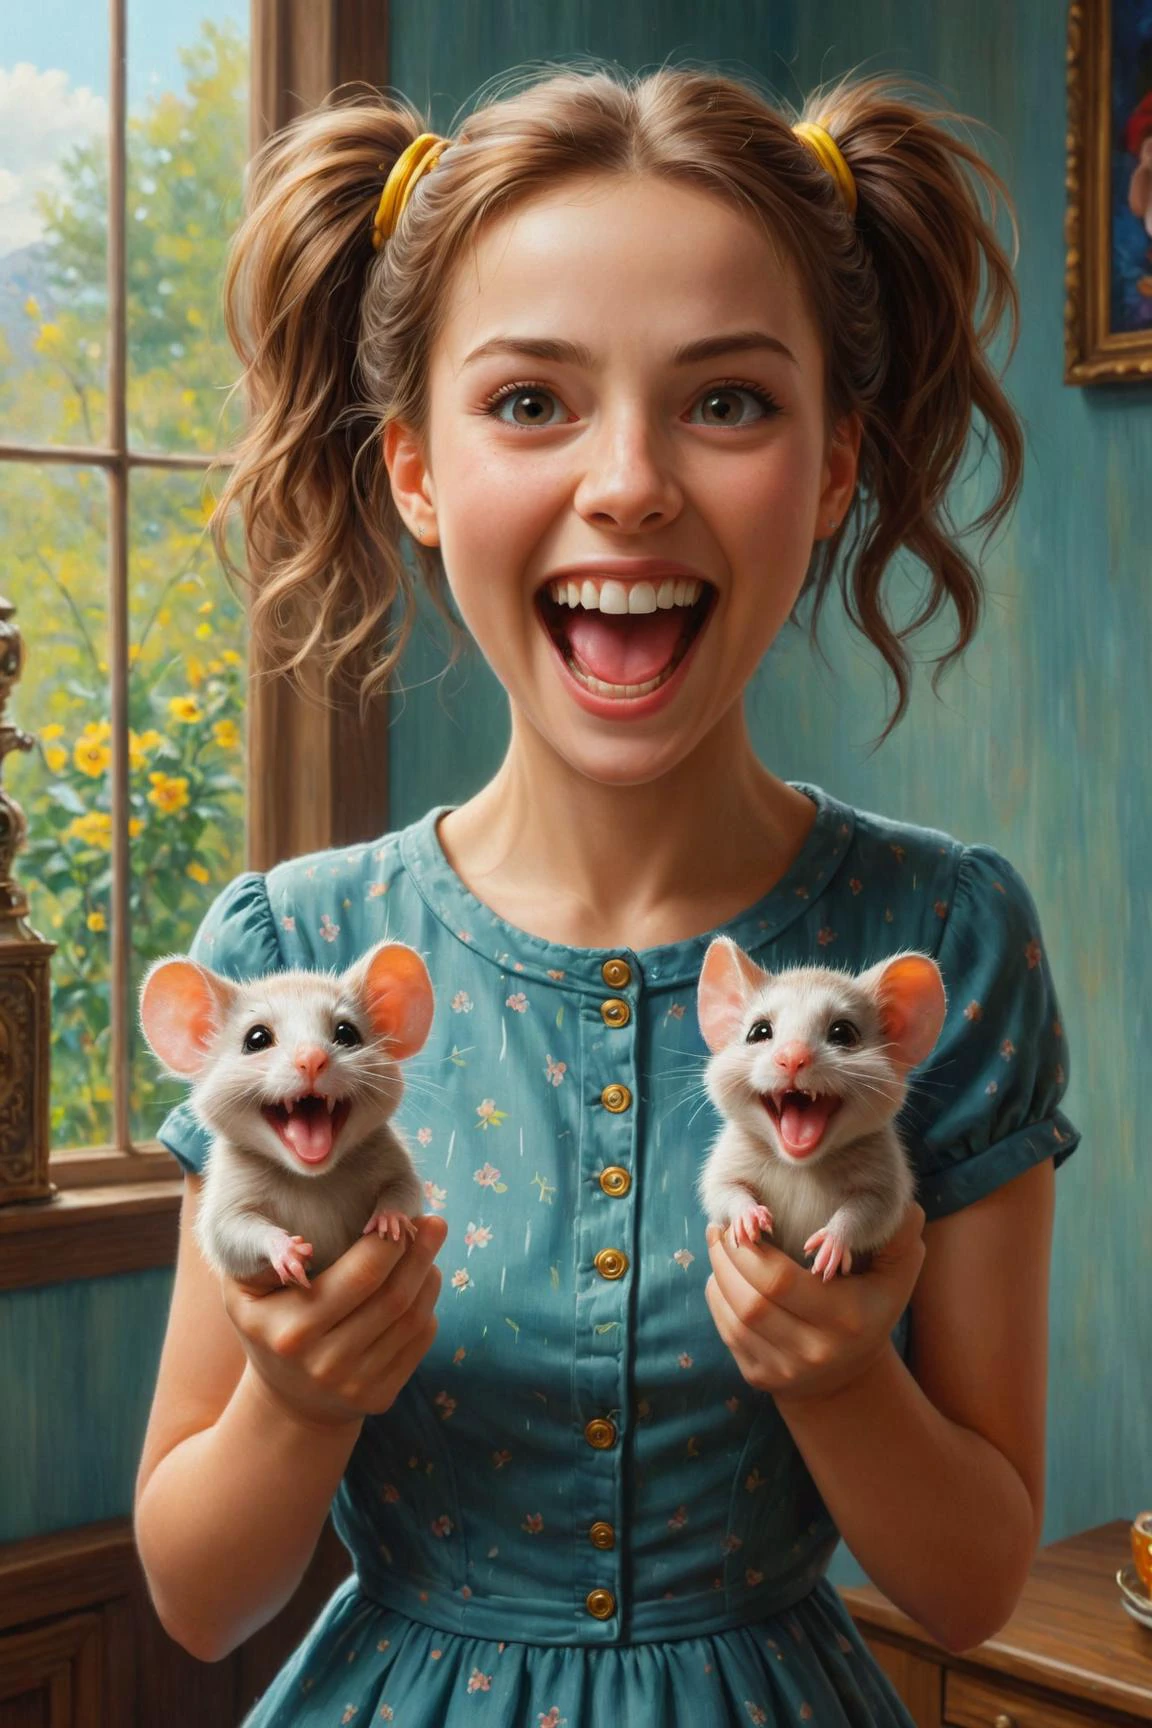 經過 (((洛瑞·厄利) 和凱莉·蘇·德康尼克 ) 和新海誠 ) 和葉夫根尼·盧什平, 柯達電影膠卷上的數位油畫棒，一個可愛的幸福女人舉著兩隻可愛的老鼠，同時瘋狂地笑, 雙持滑鼠 